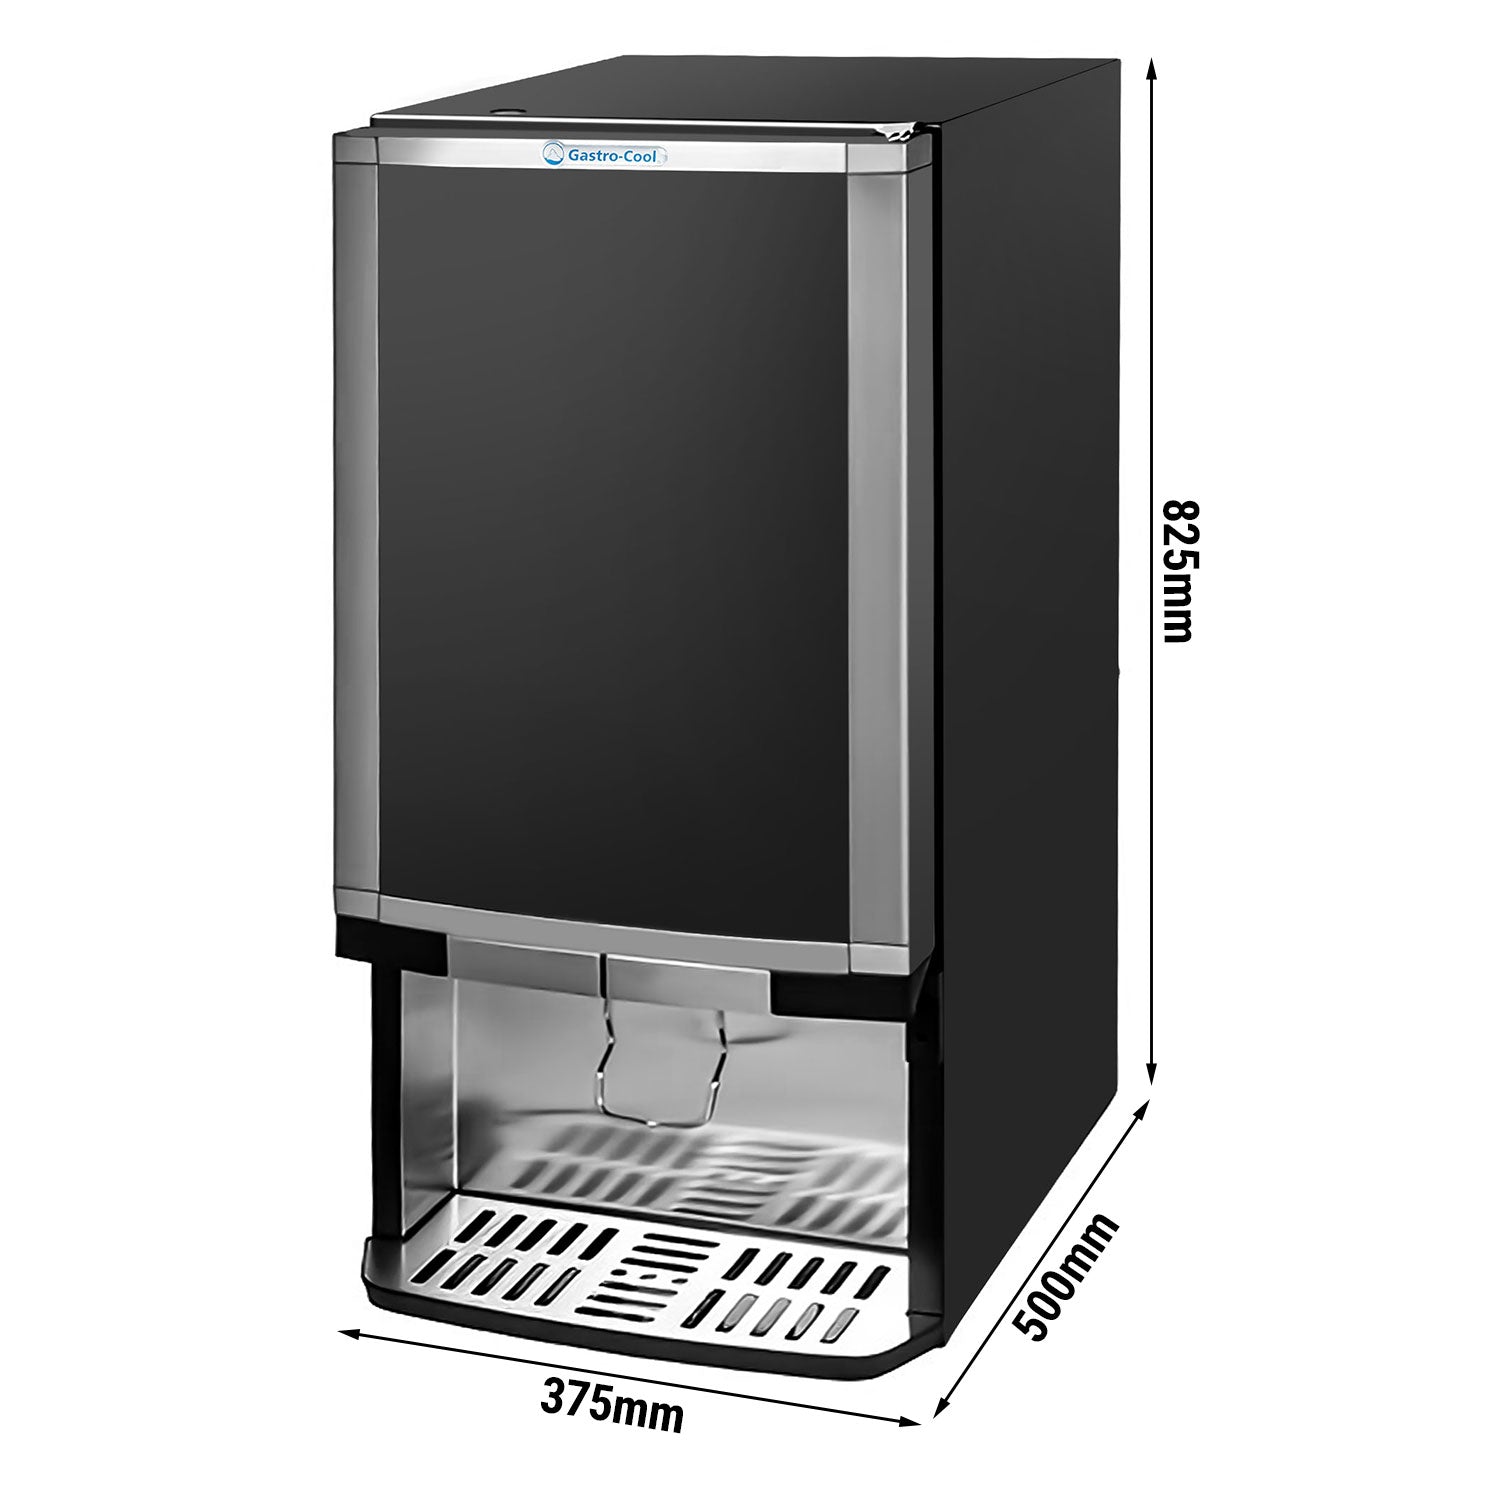 Dispenser-køleskab - 48 liter - sort